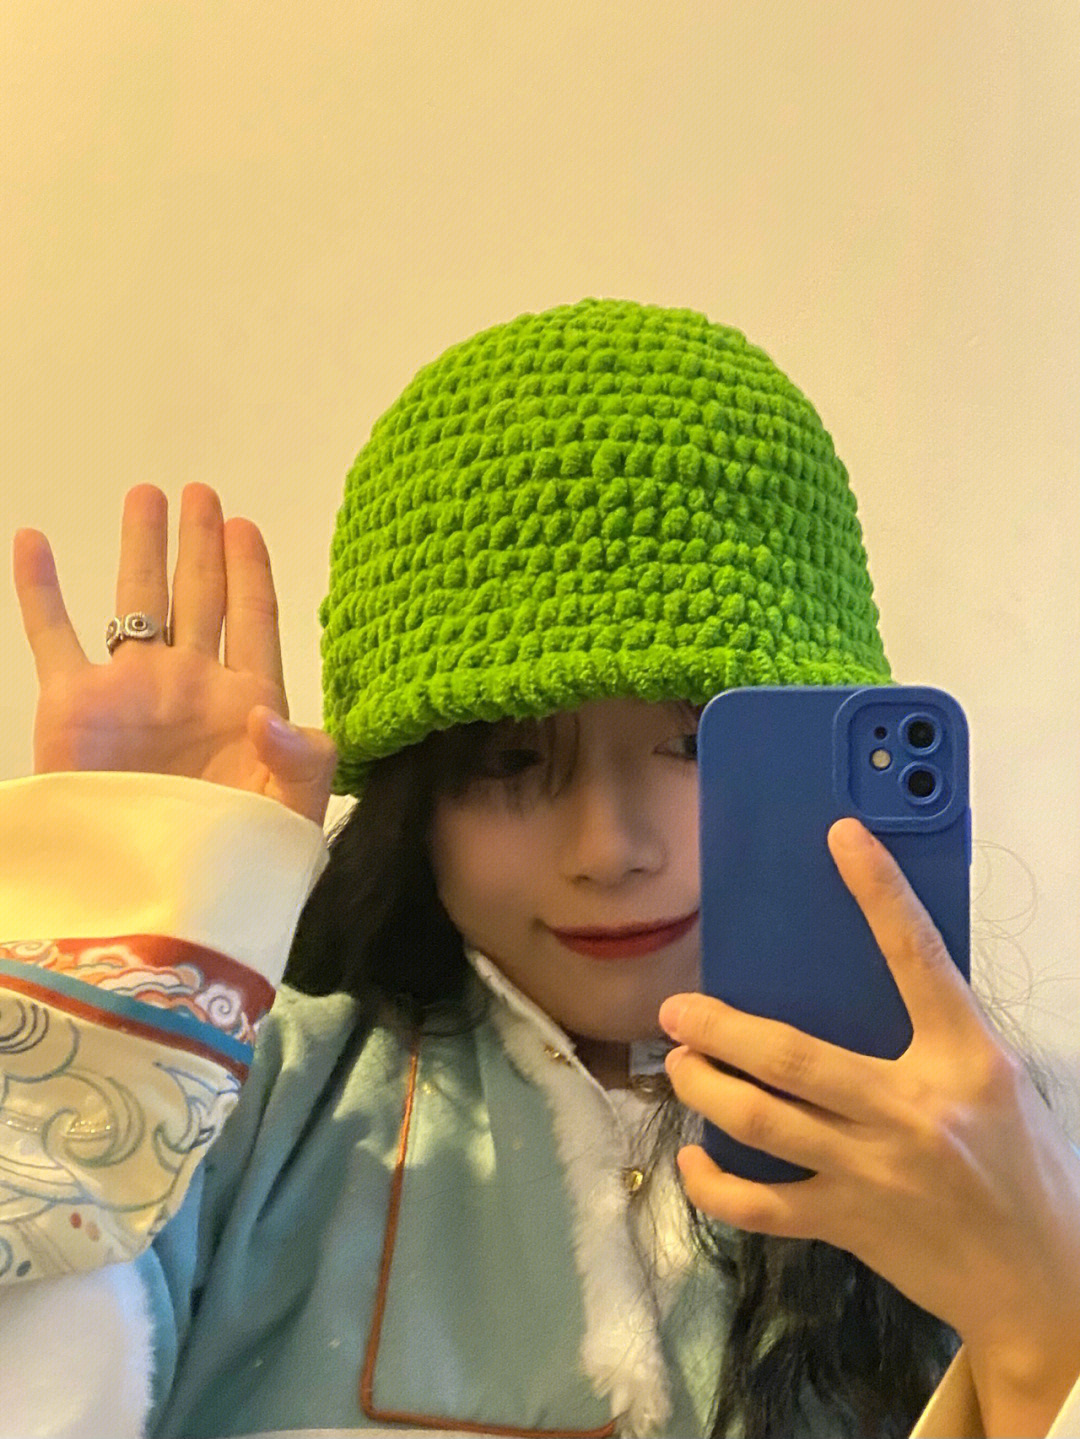 女生戴绿色帽子含义图片